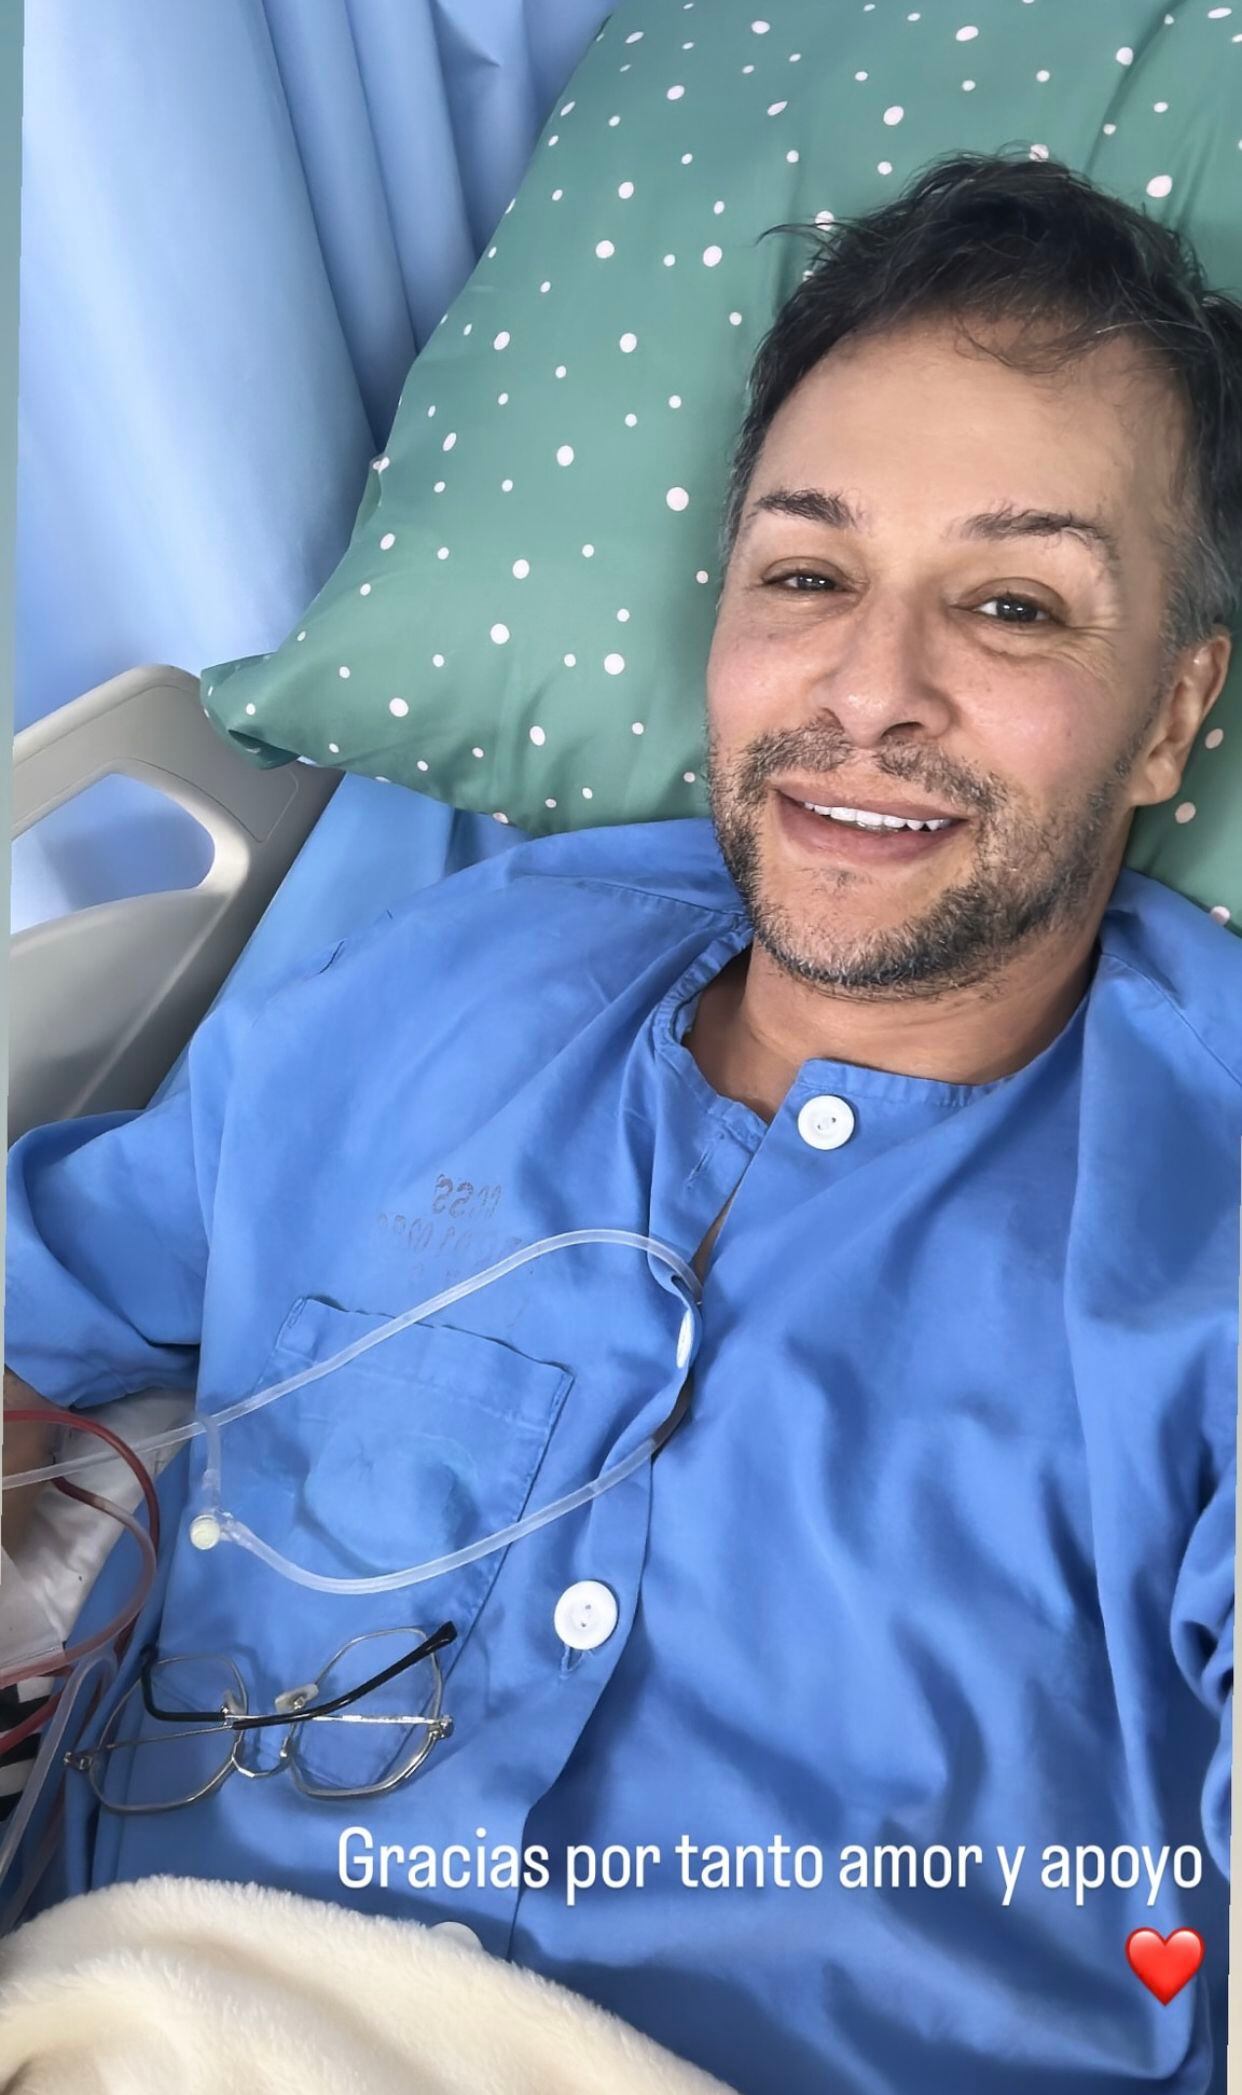 Ángelrafael González fue hospitalizado luego de que le diagnosticaran un tumor cerebral. El maquillista se ha sentido muy agradecido al recibir tanto cariño y apoyo. Foto: Instagram